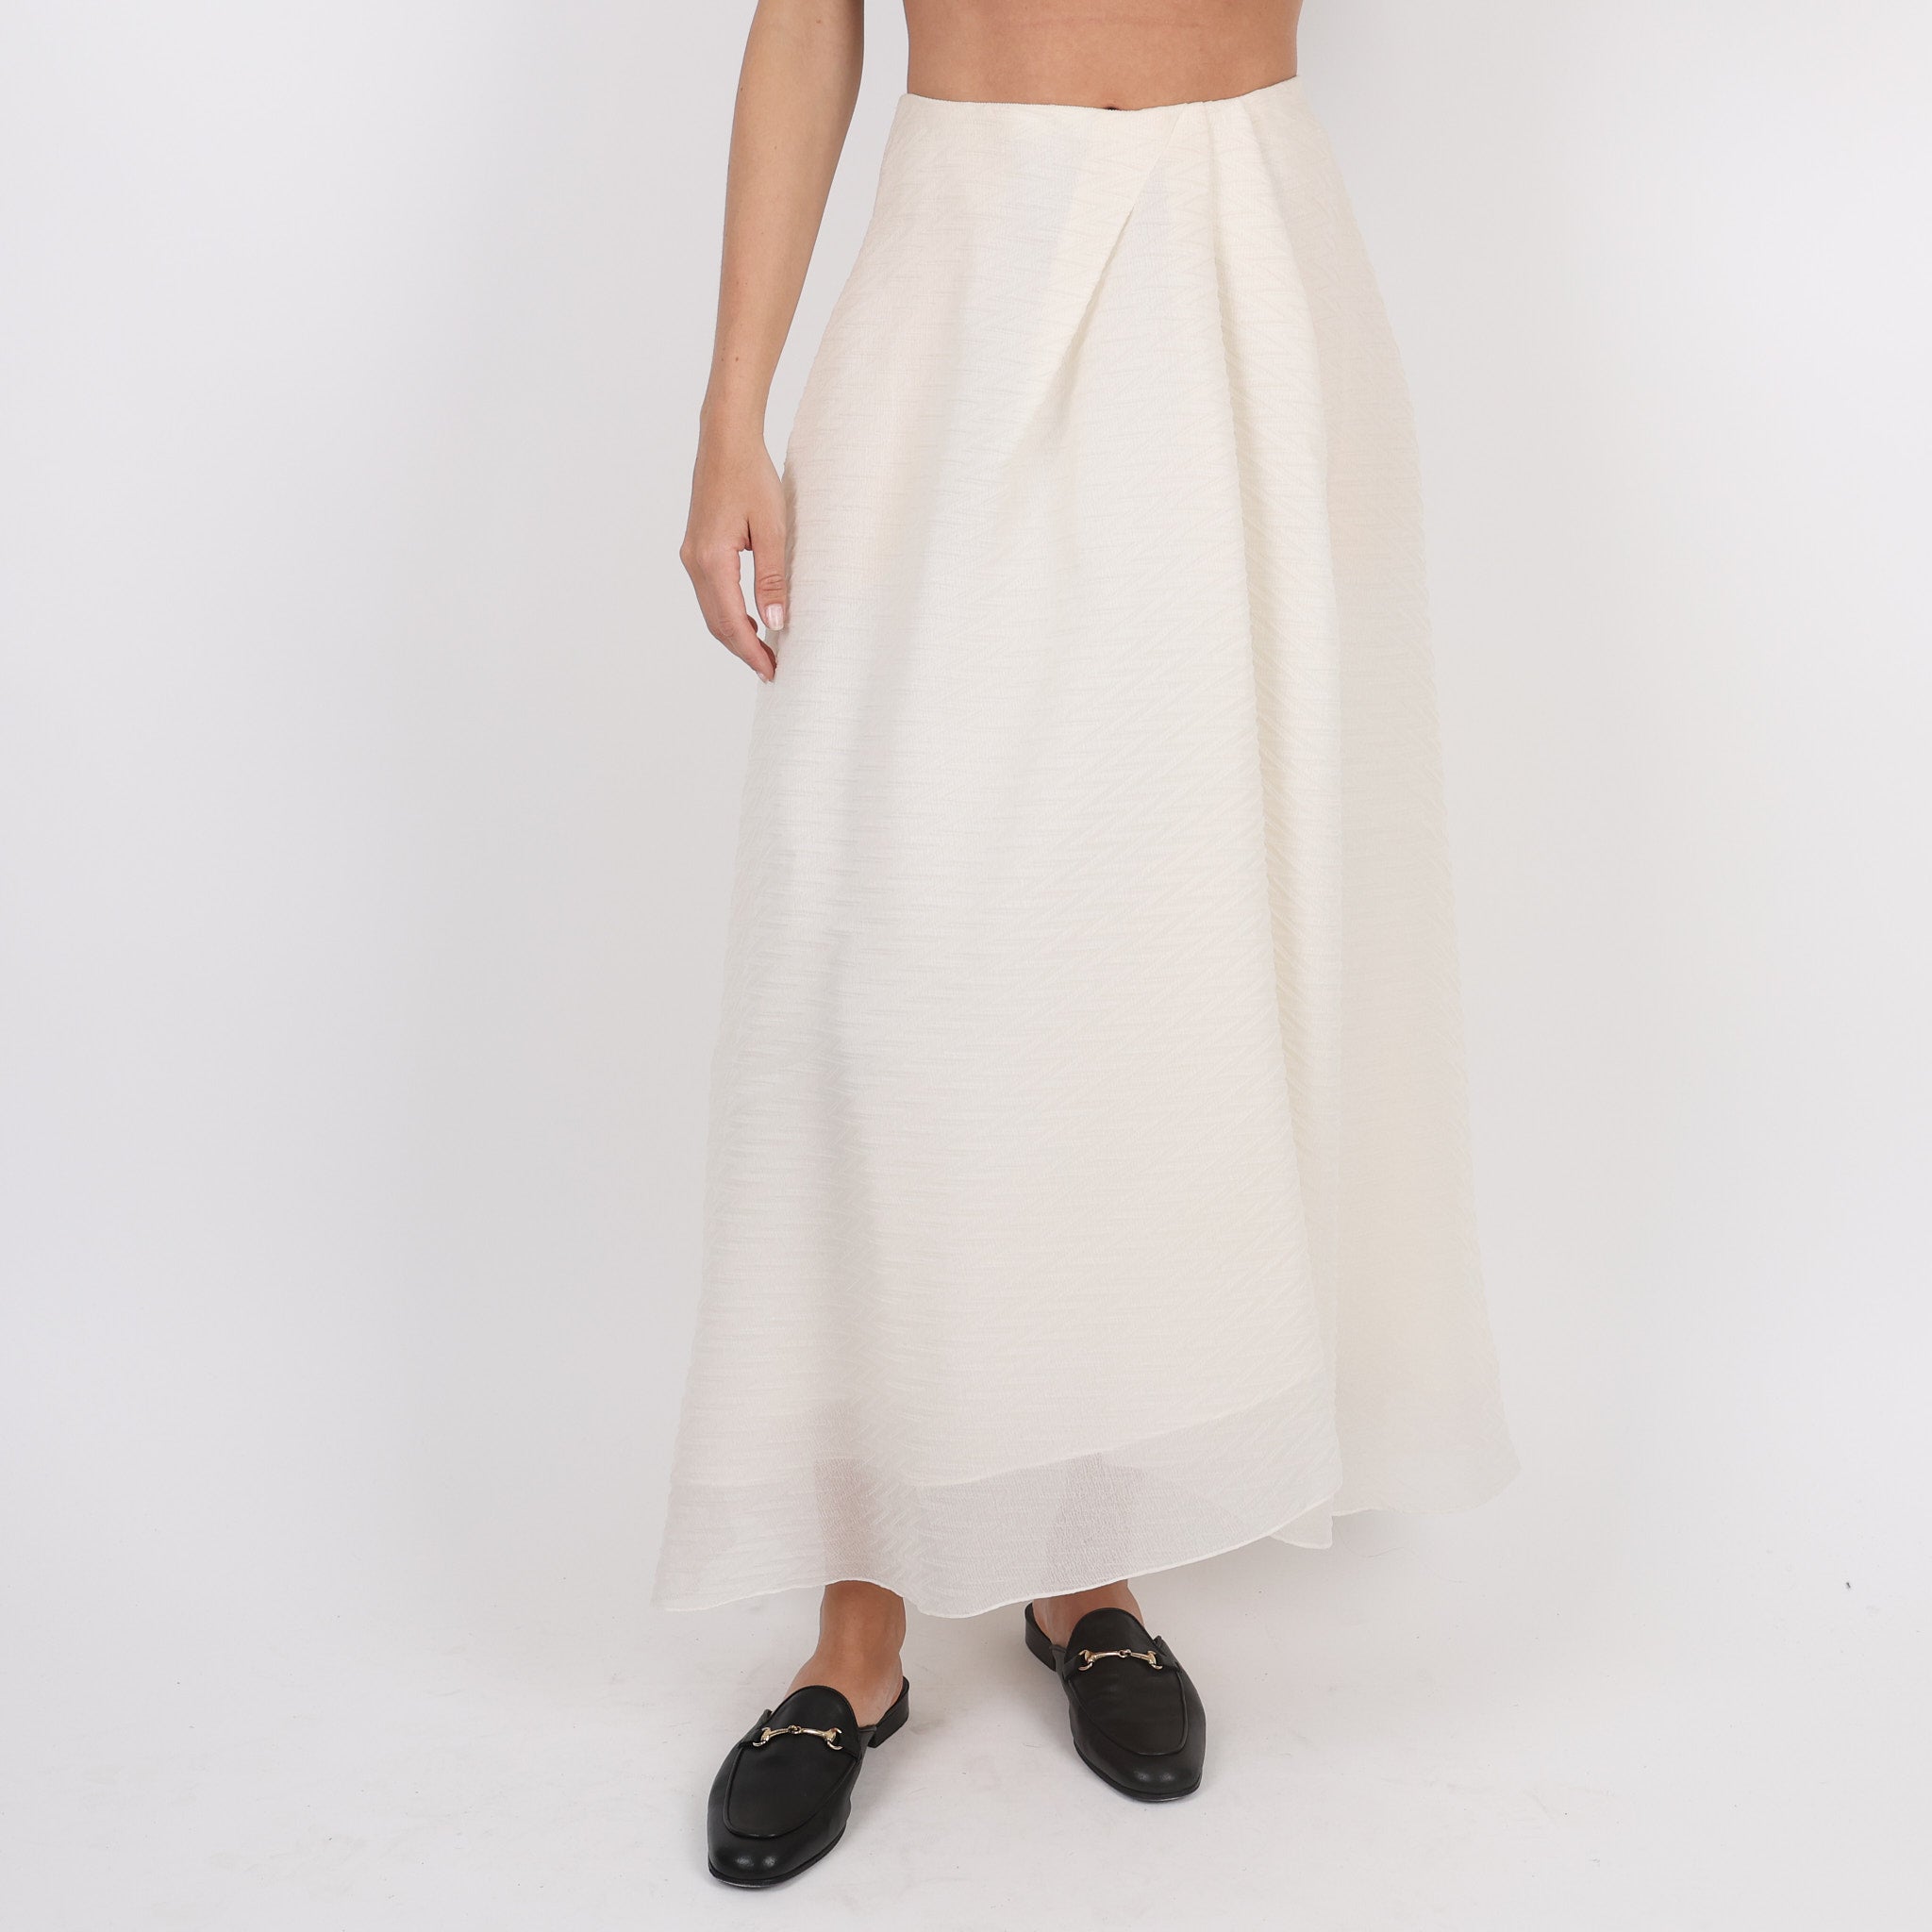 Skirt, UK Size 8